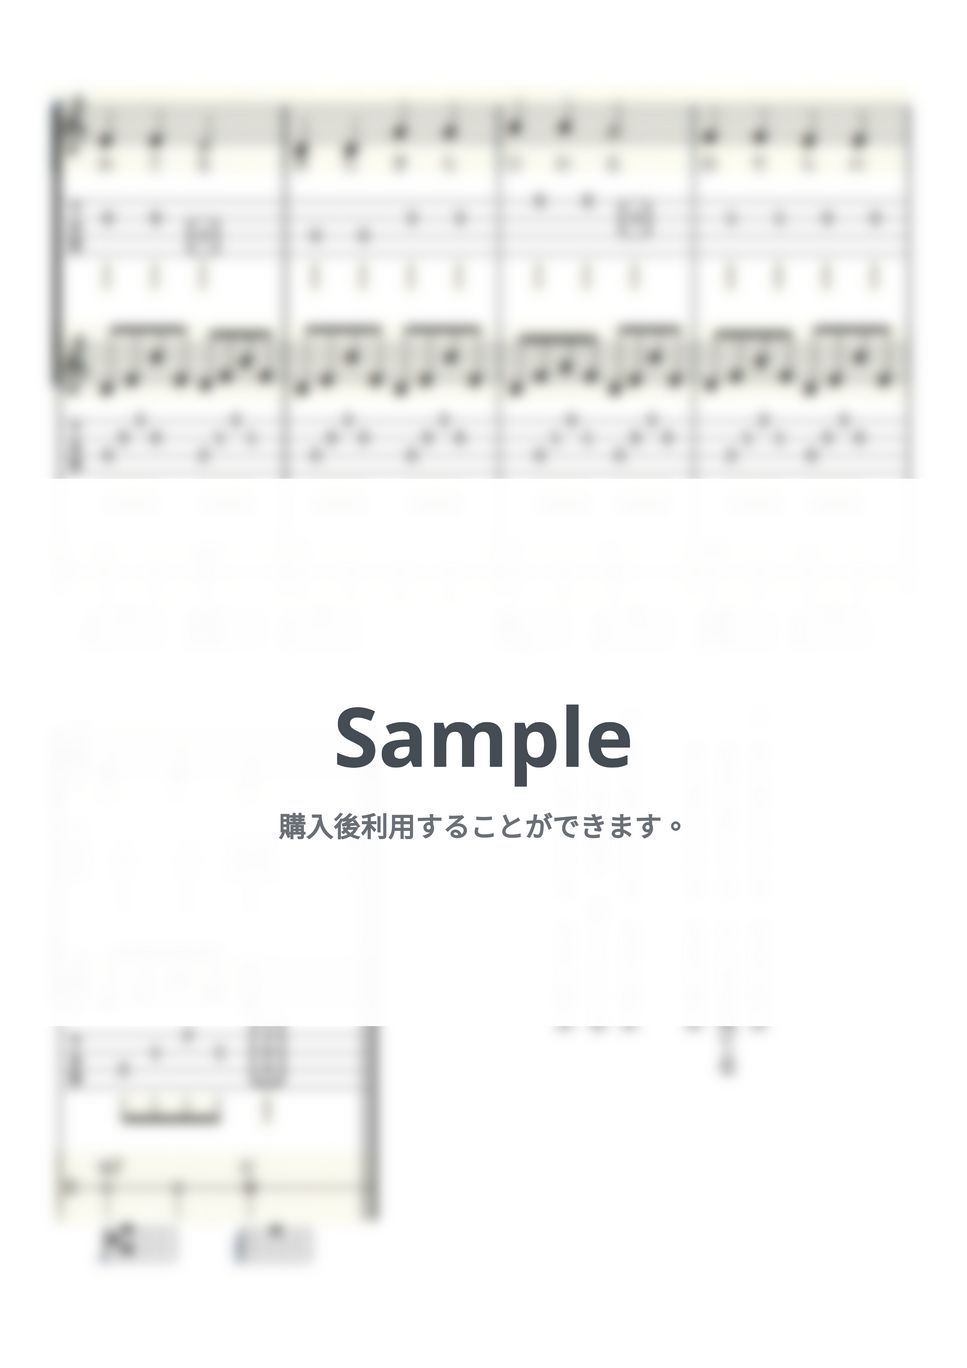 きらきら星 (ウクレレ三重奏/High-G・Low-G/初級) by ukulelepapa